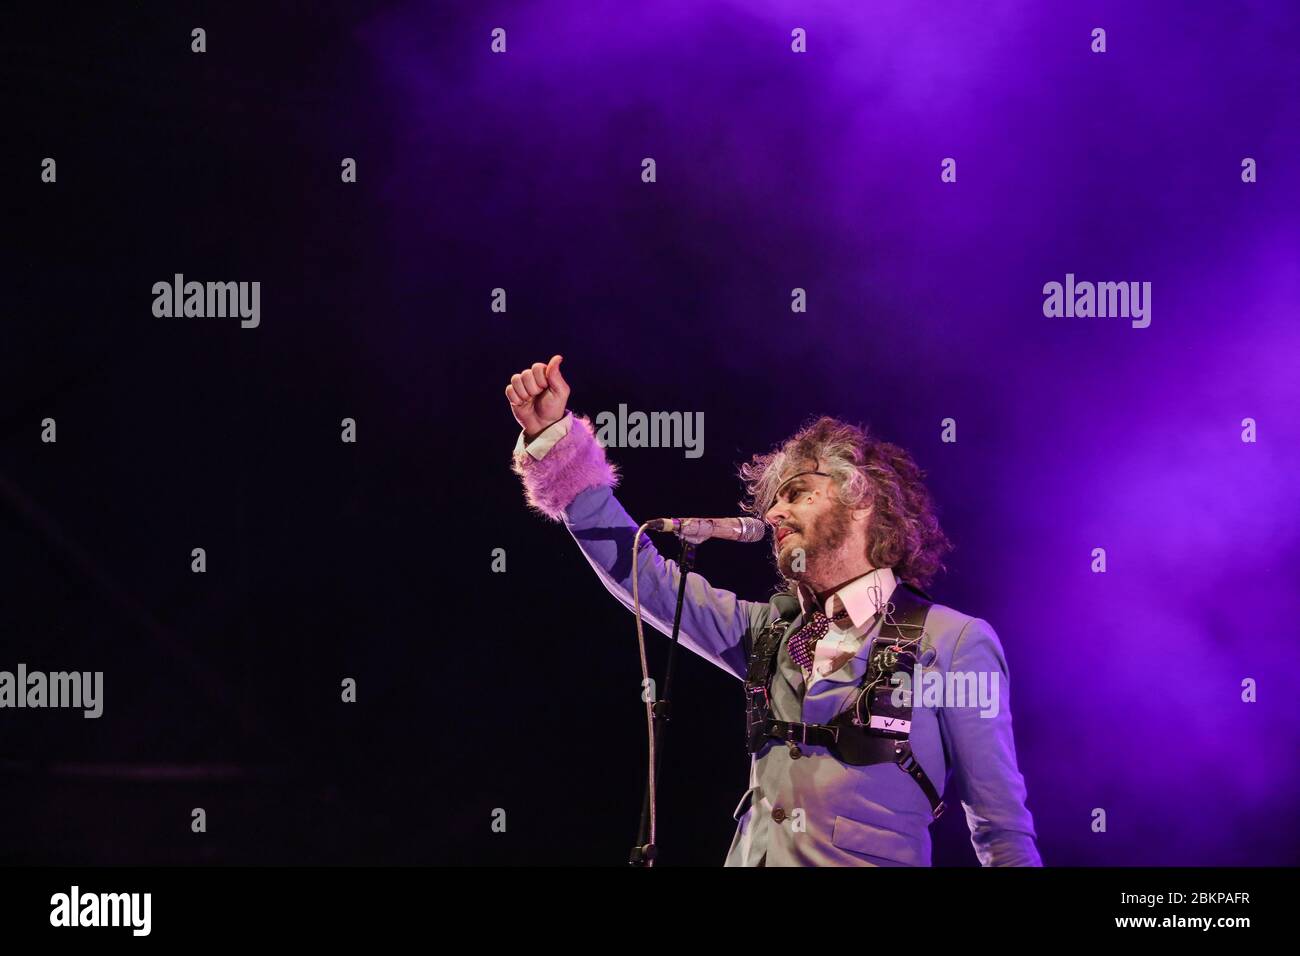 El cantante Wayne Coyne de The Flaming Lips, mientras la banda actúa en el Bluedot Festival 2018 celebrado en Jodrell Bank en Cheshire, Reino Unido. Foto de stock